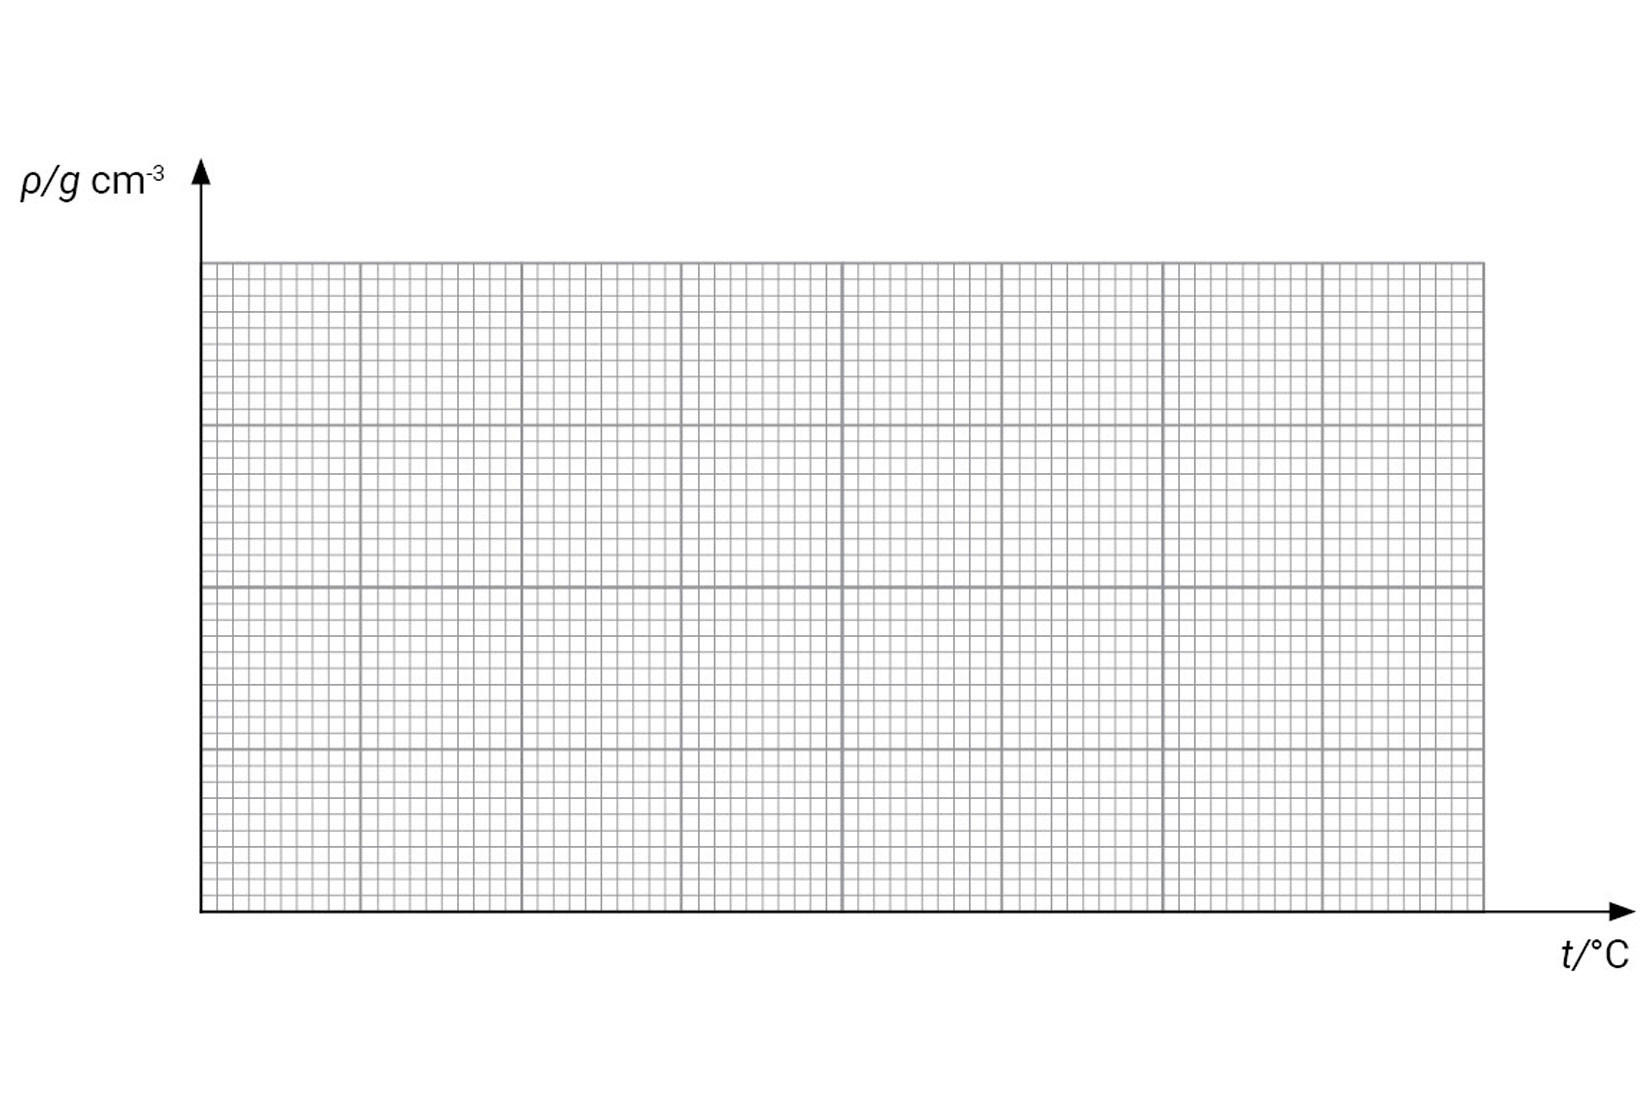 Fotografija prikazuje graf. Vertikalna os označava gustoću, a horizontalna os označava temperaturu. Sam graf je ucrtan na milimetarski papir.